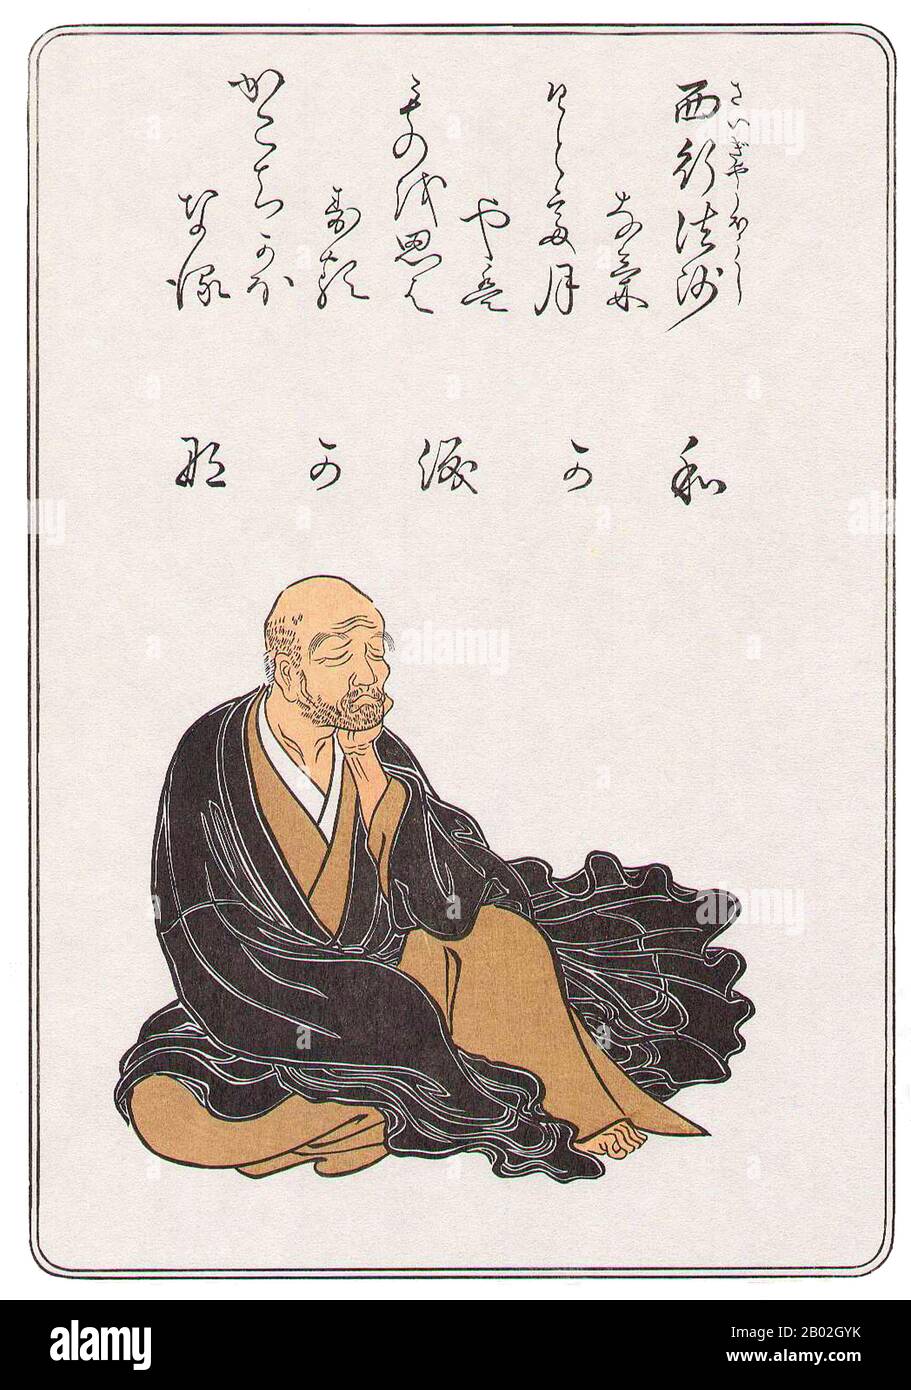 Nato a 佐藤 義清 Norikiyo (Satō) a Kyoto da nobile famiglia, Sayyo visse durante la traumatica transizione di potere tra i nobili della vecchia corte e i nuovi guerrieri samurai. Dopo l'inizio dell'età di Mappō (1052), il Buddismo fu considerato in declino e non più come un mezzo di salvezza efficace. Questi cambiamenti culturali durante la sua vita hanno portato ad un senso di malinconia nella sua poesia. Come giovane, lavorò come guardia per ritirare l'imperatore Toba, ma nel 1140 all'età di 22 anni, per ragioni ora sconosciute, abbandonò la vita mondana per diventare un monaco, prendendo Il nome religioso En'i (円位). In seguito prese il nome della penna, Foto Stock